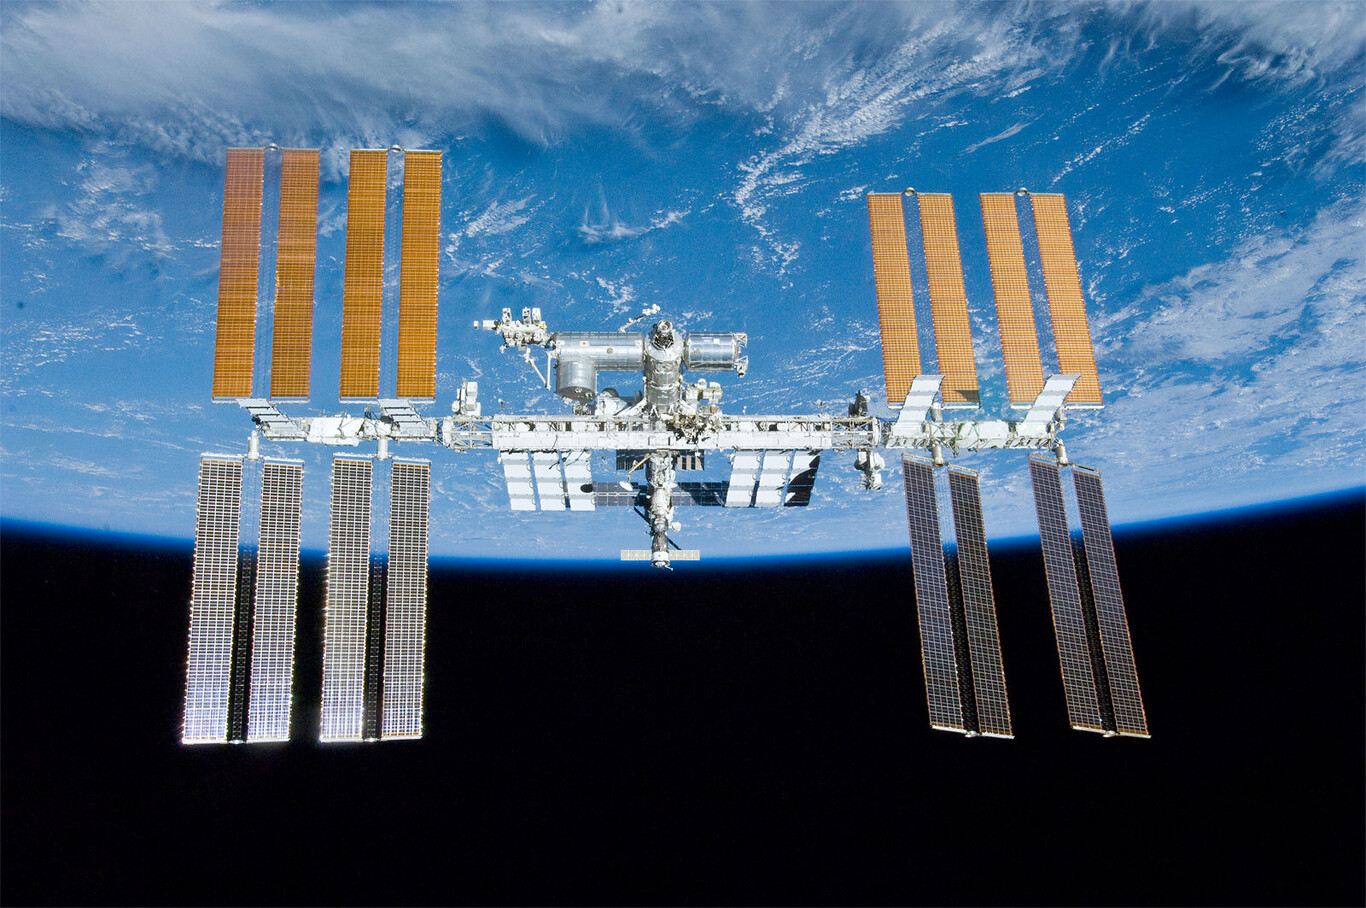 La Estación Espacial Internacional se estrellará en el Océano Pacífico en 2031